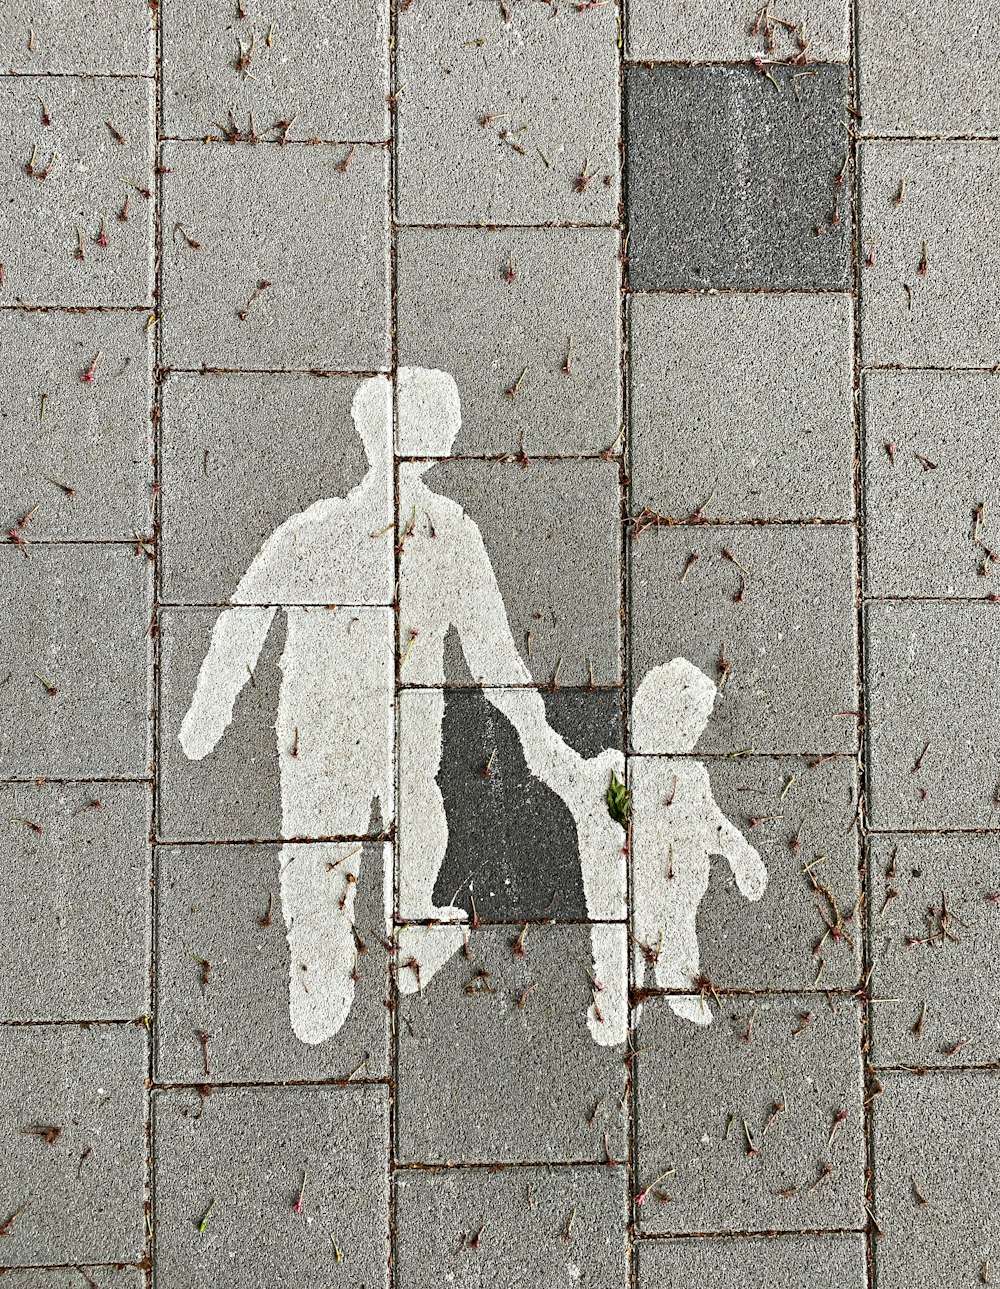 2 person walking on gray concrete pavement